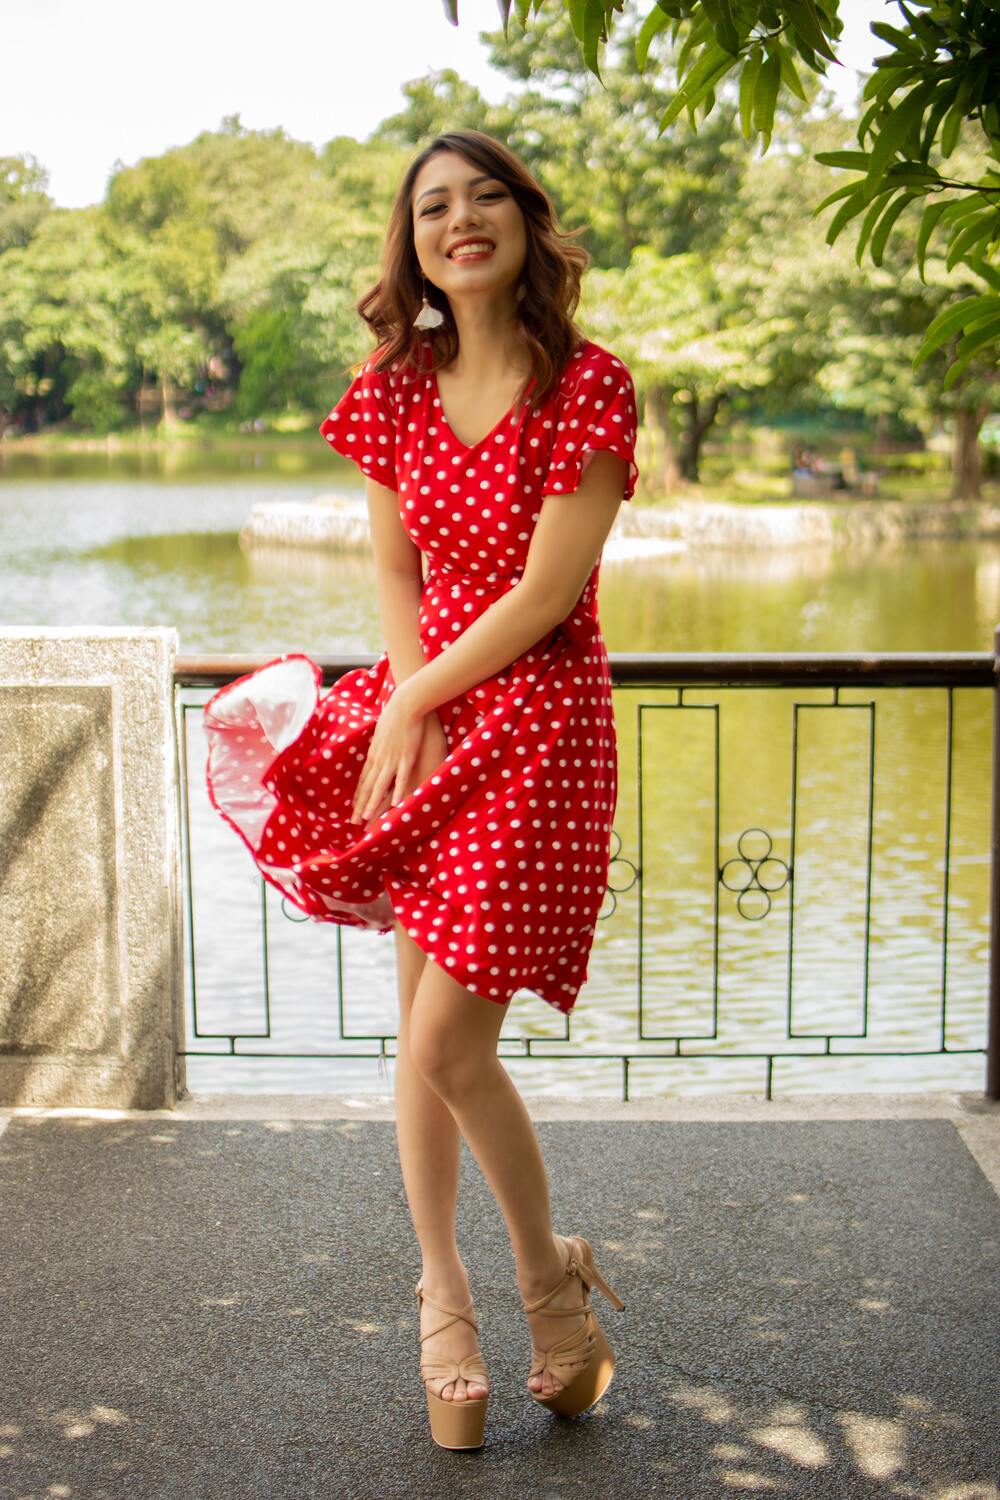 polka dot dress for summer in Europe